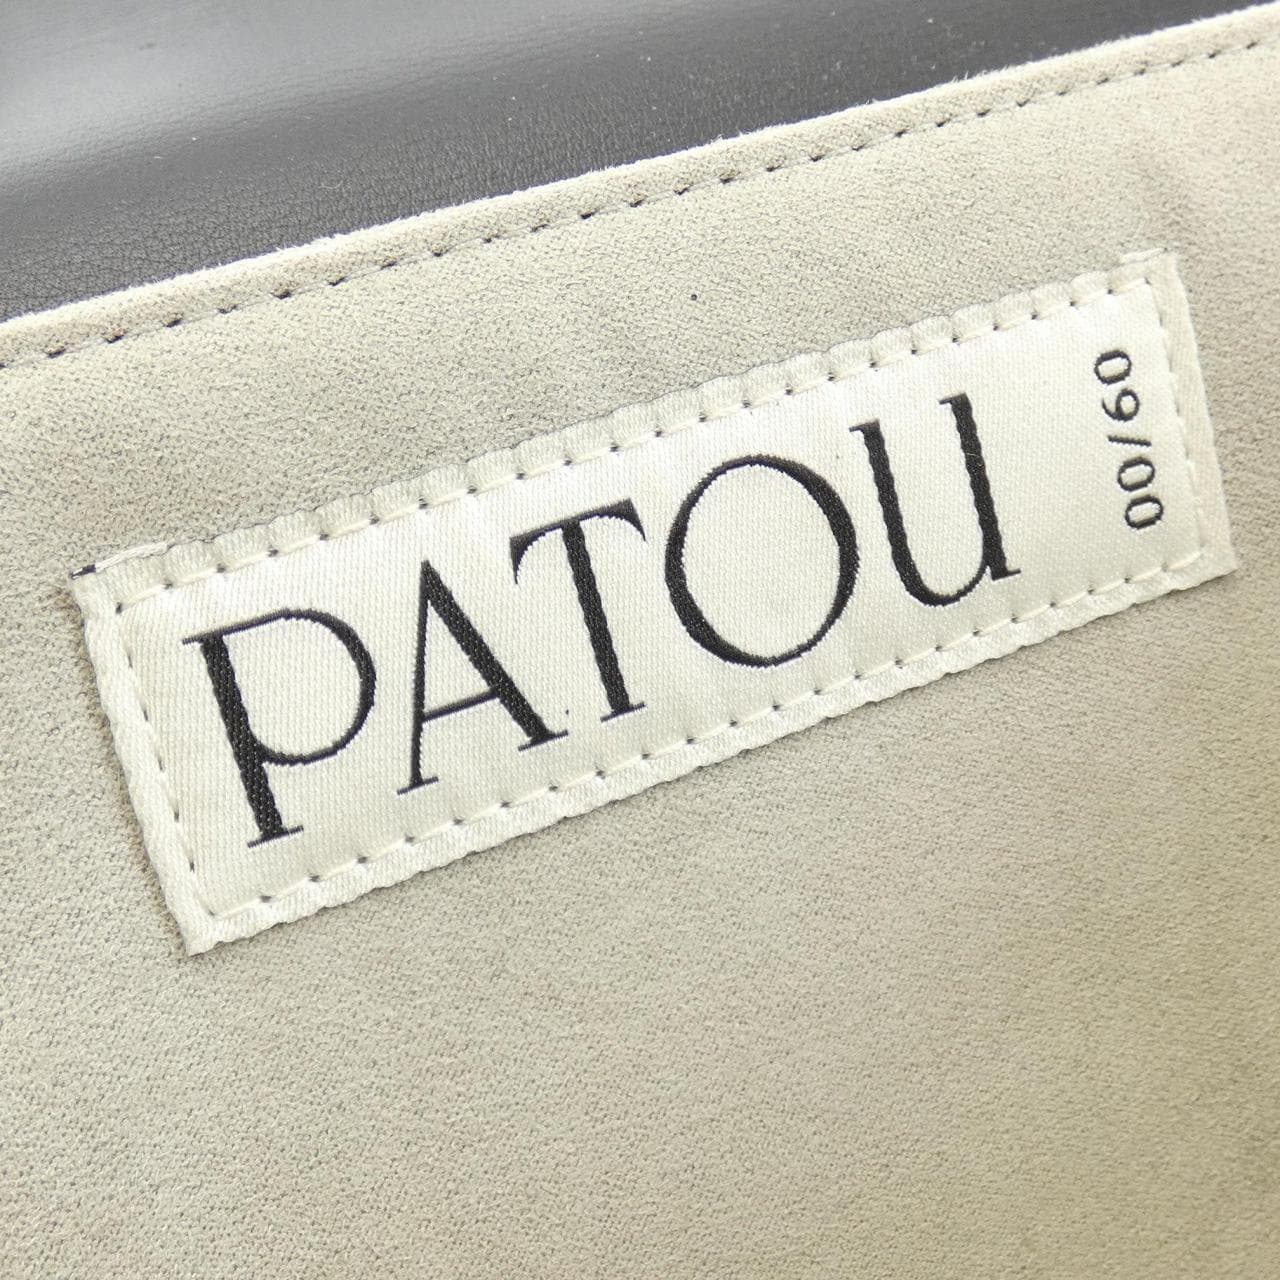 パトゥ PATOU BAG